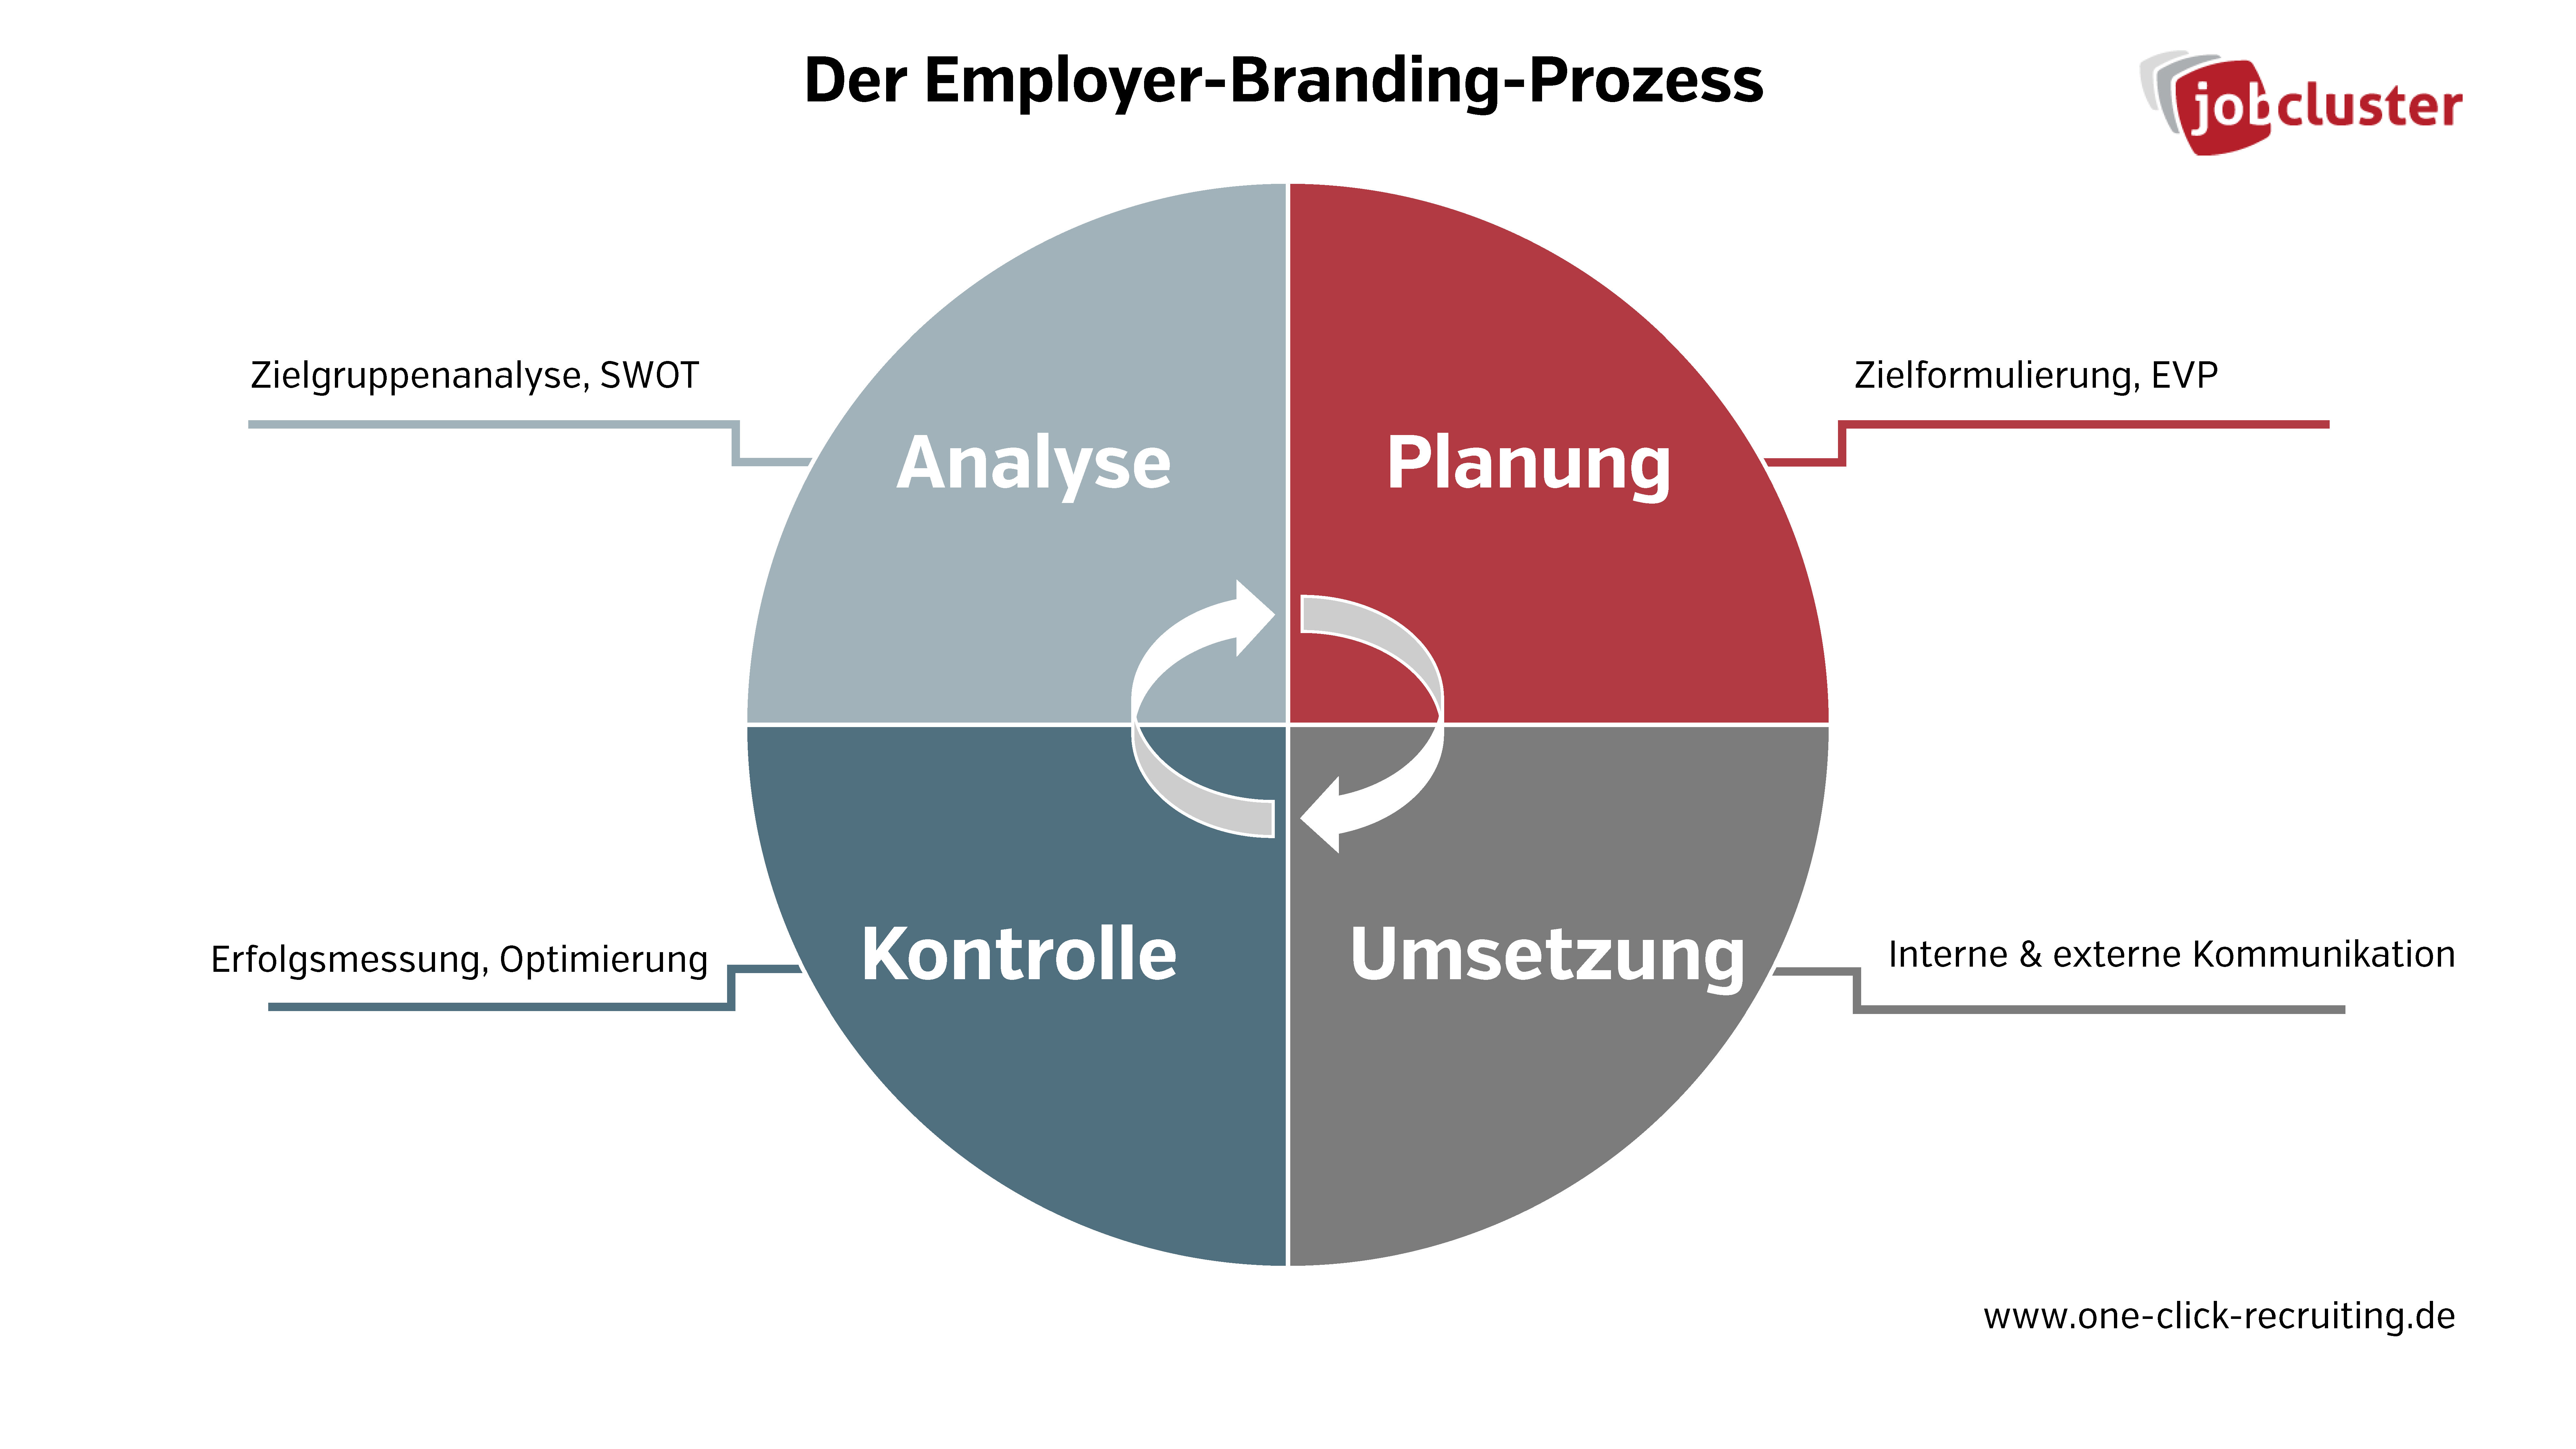 Die 4 Phasen im Employer-Branding-Prozess